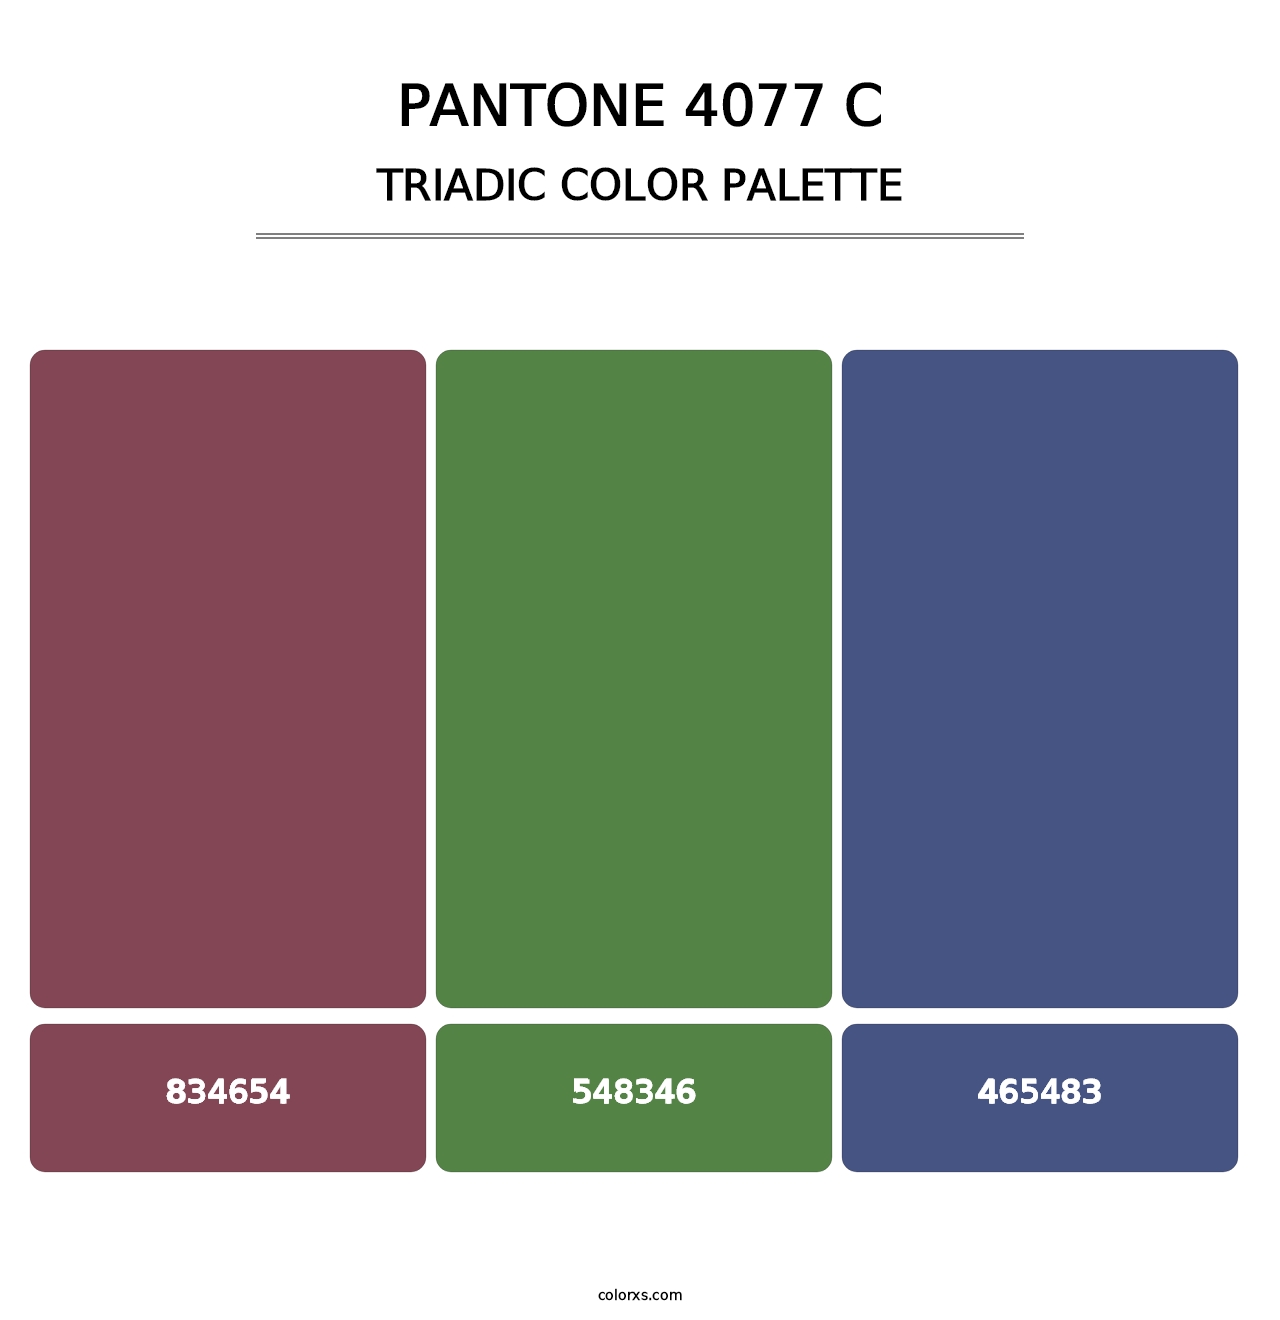 PANTONE 4077 C - Triadic Color Palette